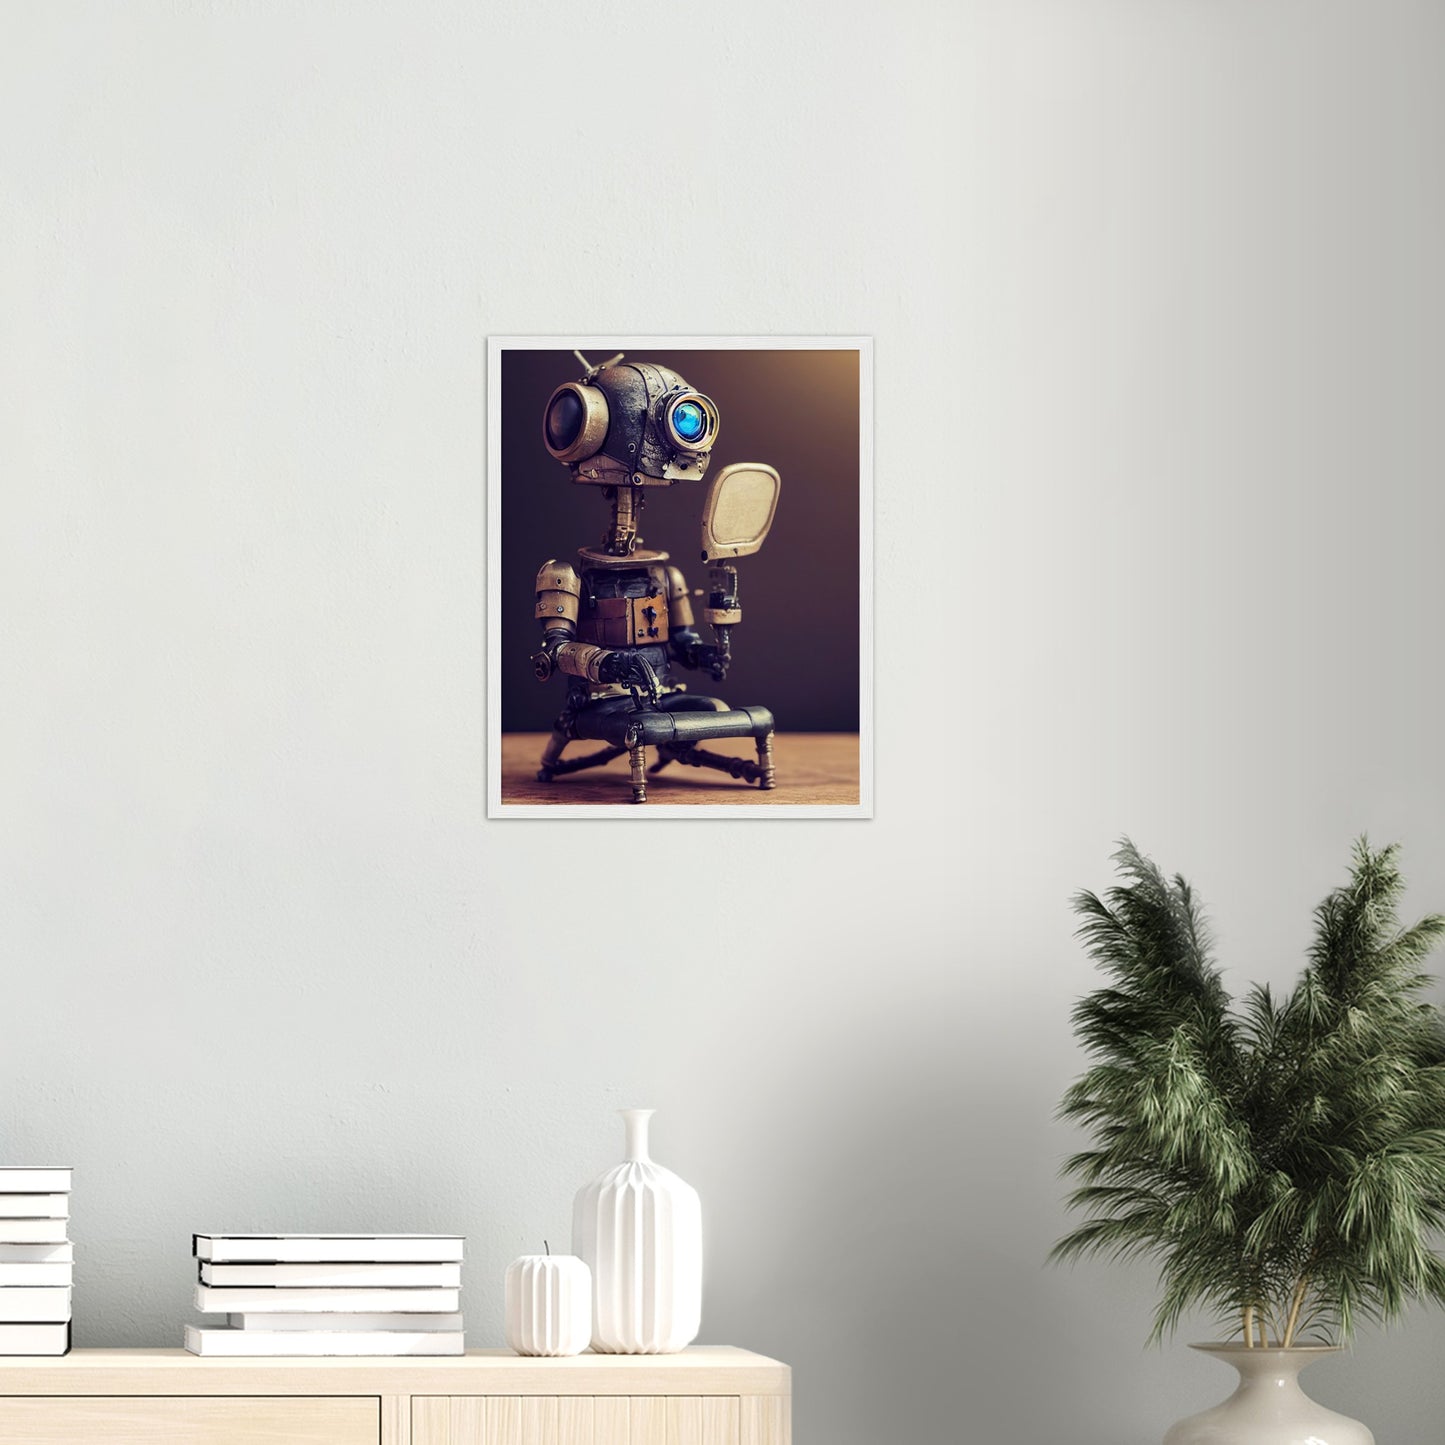 Poster mit Rahmen (Holz) in Museumsqualität - Tiny robot with a mirror - Hitoshi 人 - Wall Art - Spiegel - Acryldruck - Wandkunst - Customizable Coffee Cup - Personalized Gifts - Kunstdruck - Kleine Roboter - Acryldruck - Little Robots - Personalized Gifts - Tiny  - Steampunk - zukunft - Poster with frame - Kunstwerk - Office Poster - Poster mit Rahmen - Kaffee Tasse - Poster - Bedruckte Tassen - Kunst Marke - Art Brand - Kunstdrucke - Künstler: John Grayst & Pixelboys - emotional robots - Geschenkidee - 